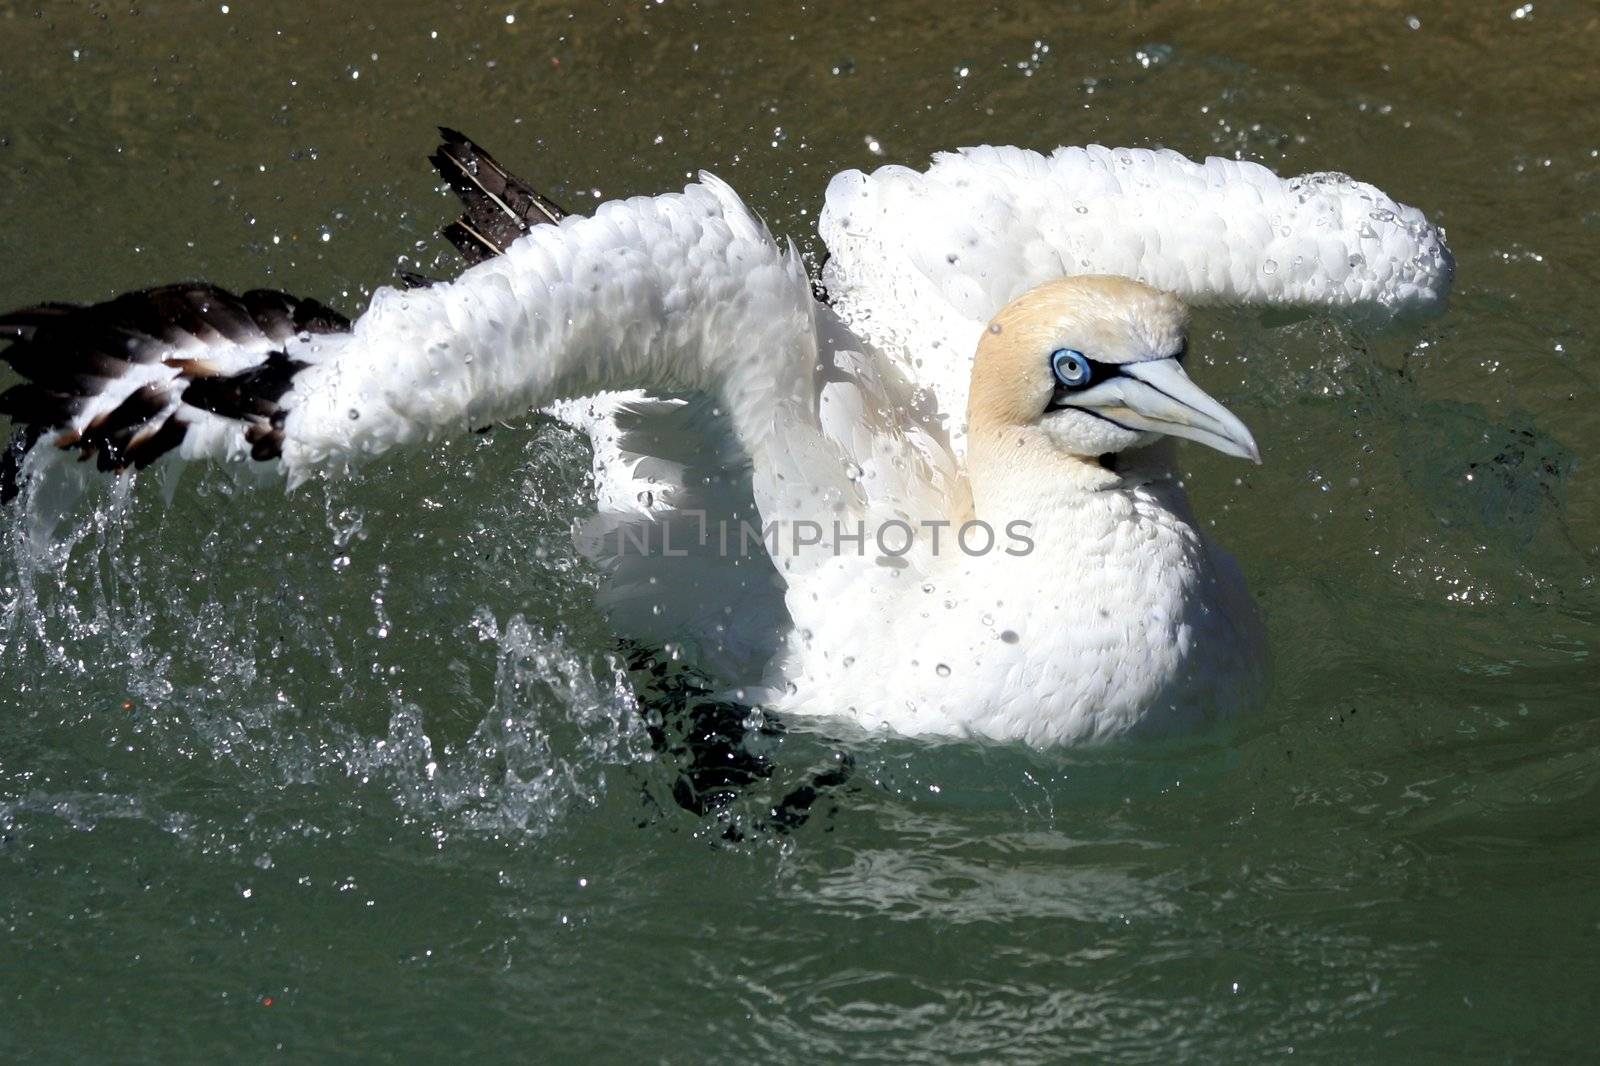 Blue eyed gannet bird splashing in the sea to wash itself